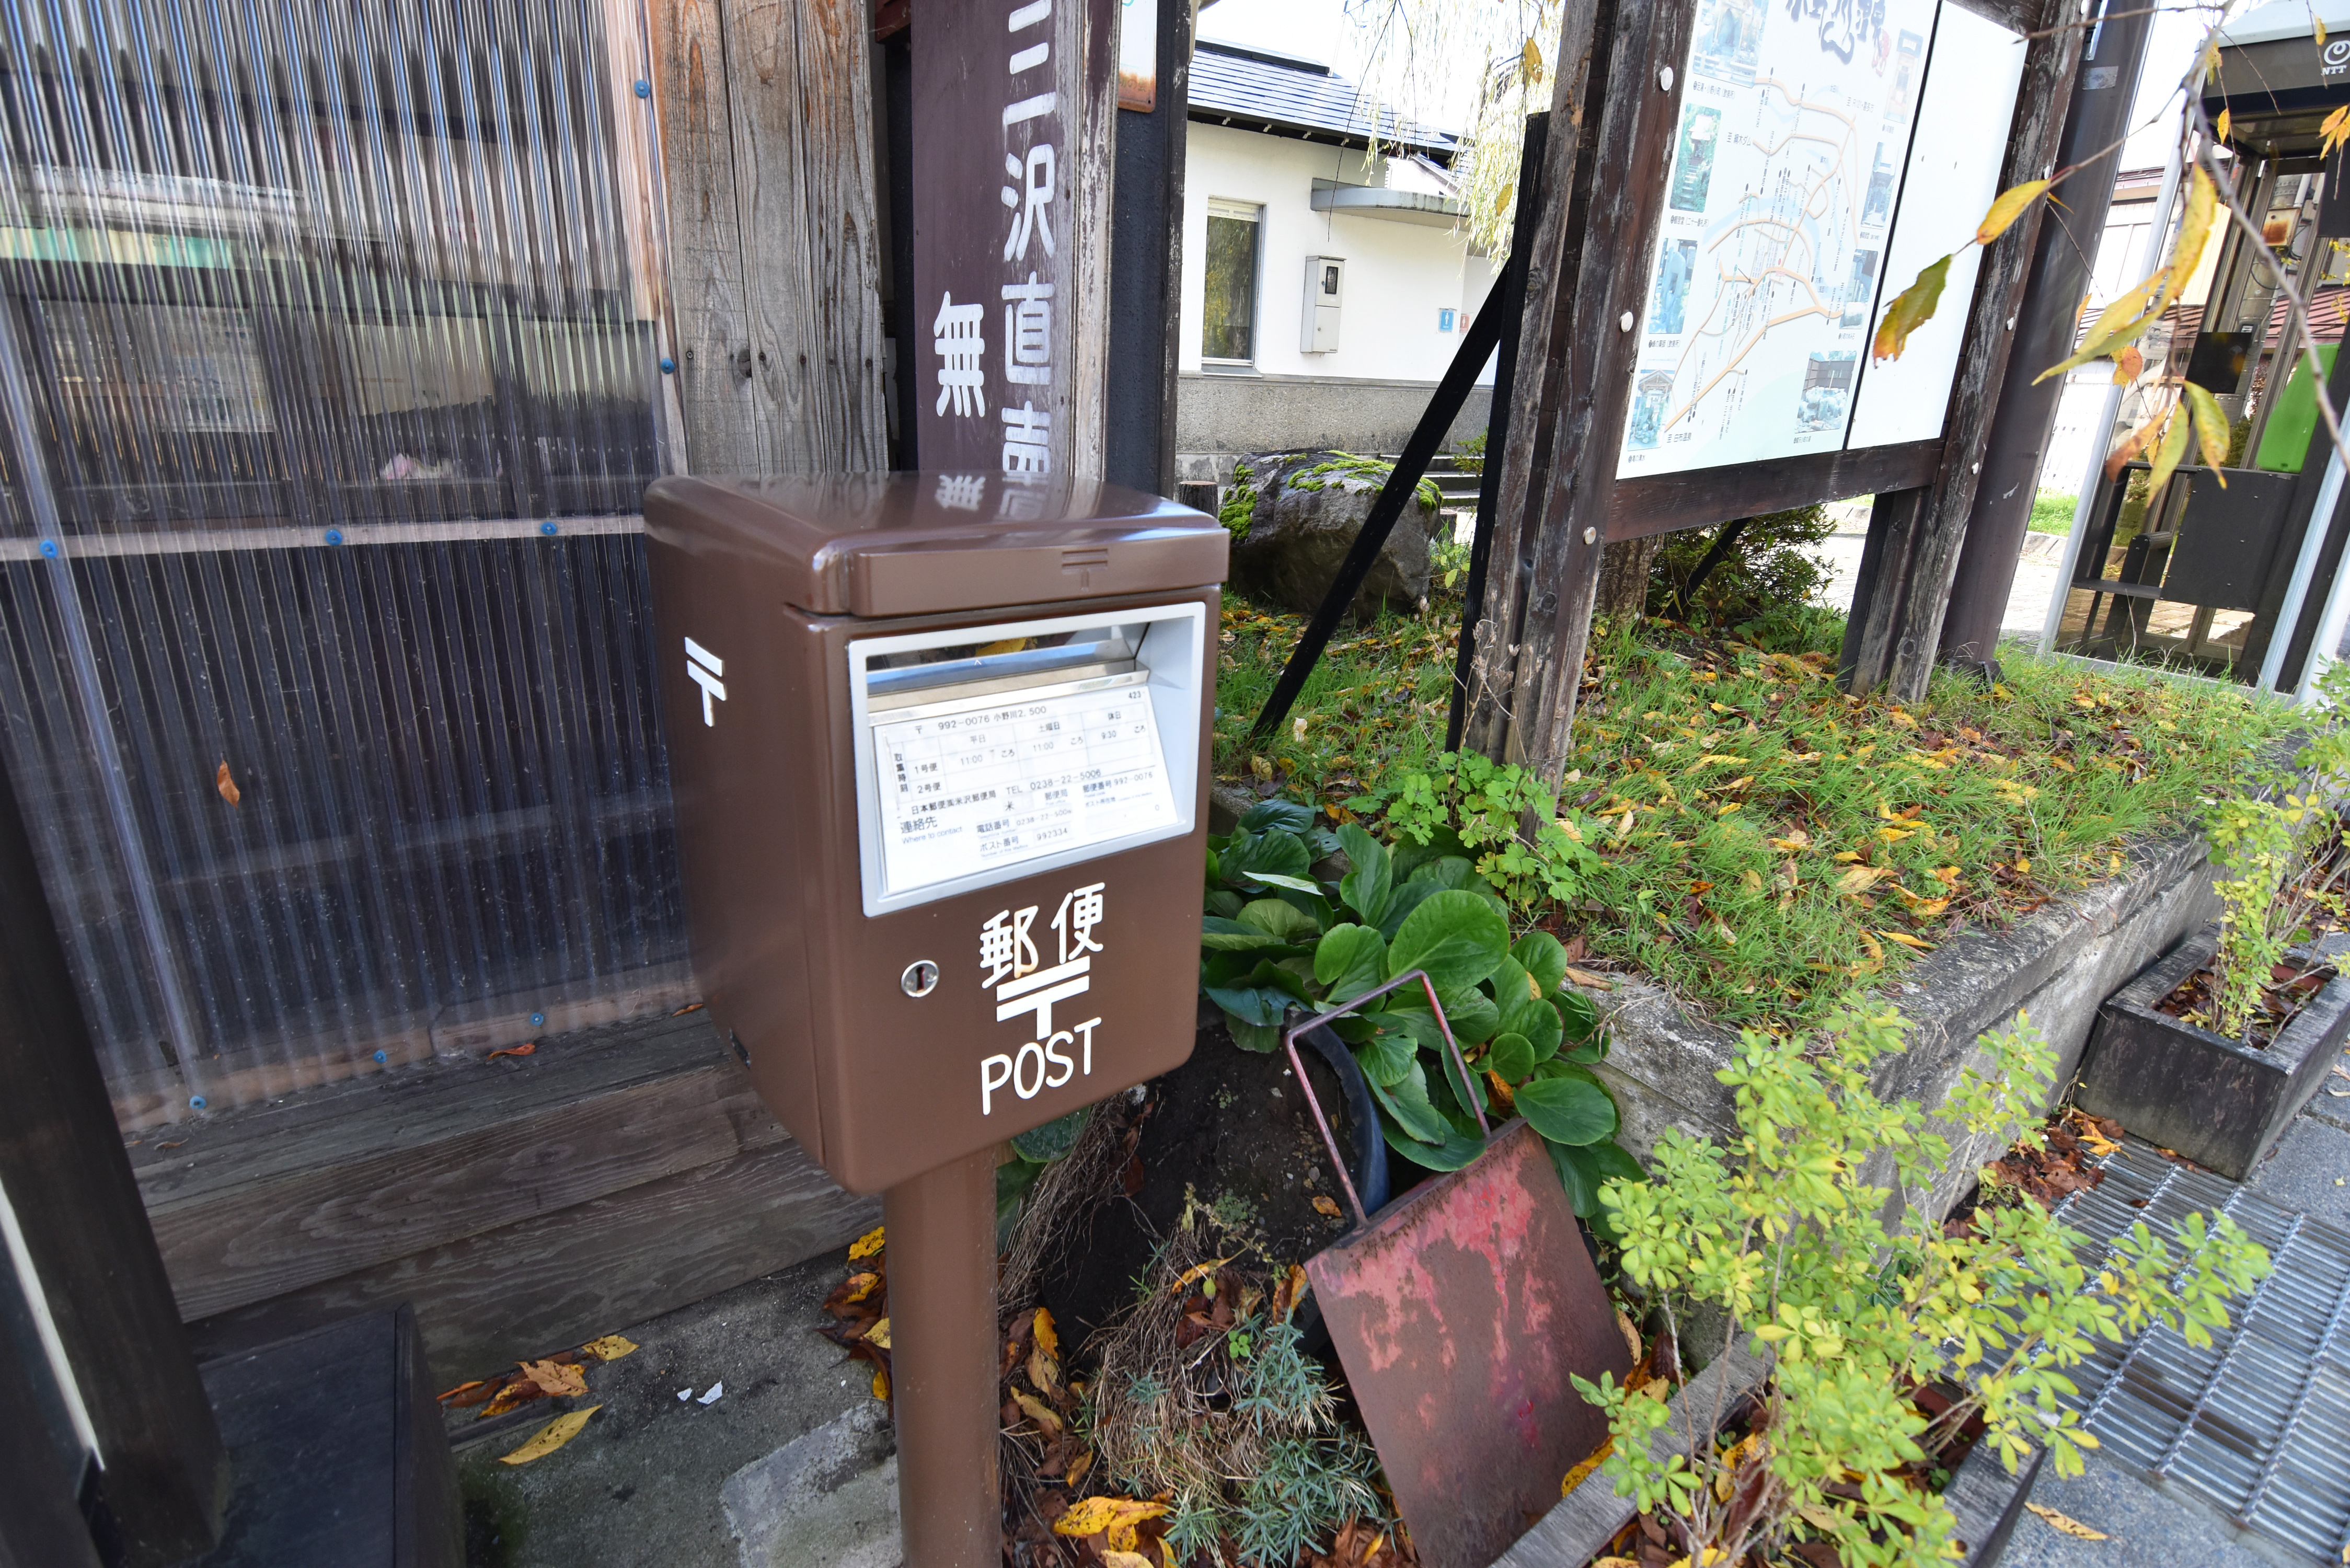 【小野川温泉街】街の至るところでレトロなバス停や建物があるのも街の魅力